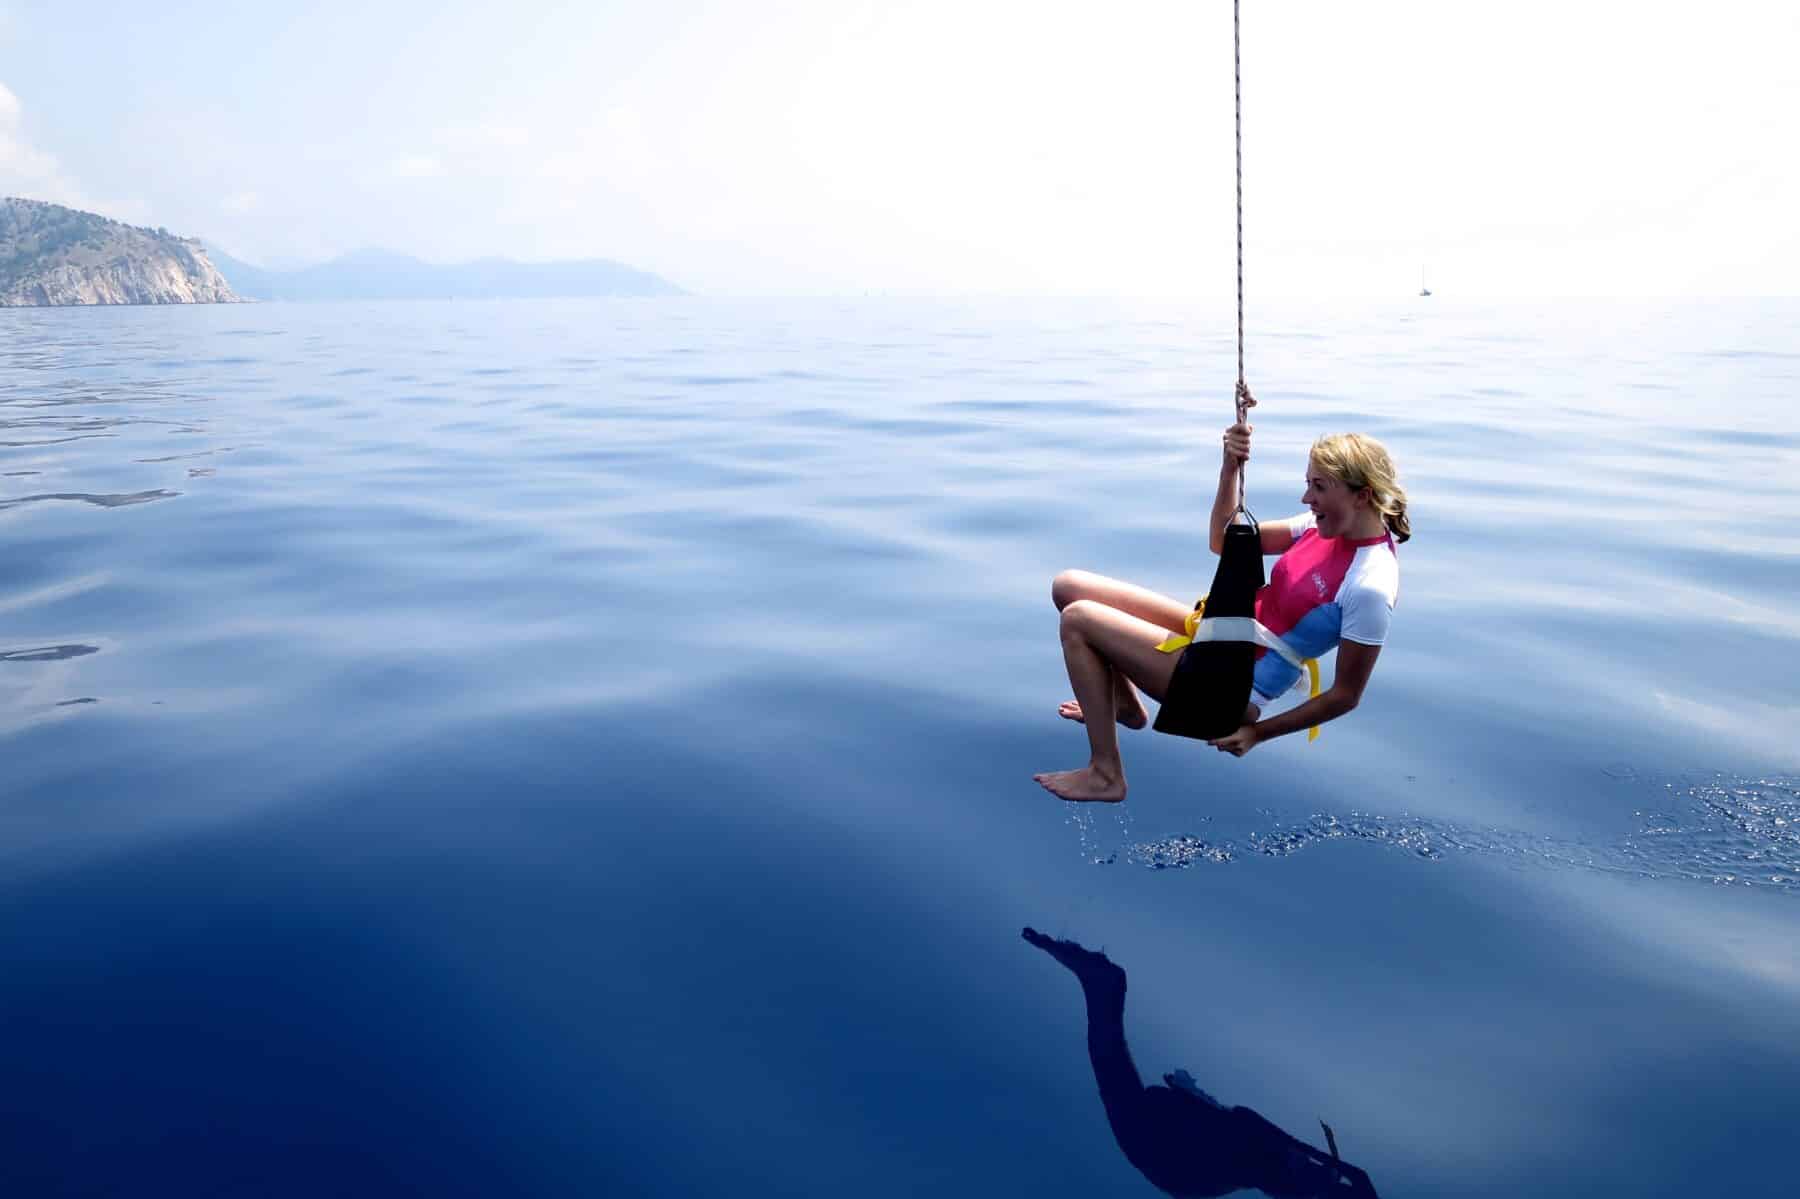 Eine Person in einer Schwimmweste sitzt auf einer Schaukel über dem ruhigen, blauen Ozean, im Hintergrund sind schwach Berge zu erkennen. Der klare Himmel und das ruhige Wasser schaffen während des Segeltörns eine friedliche Szene.